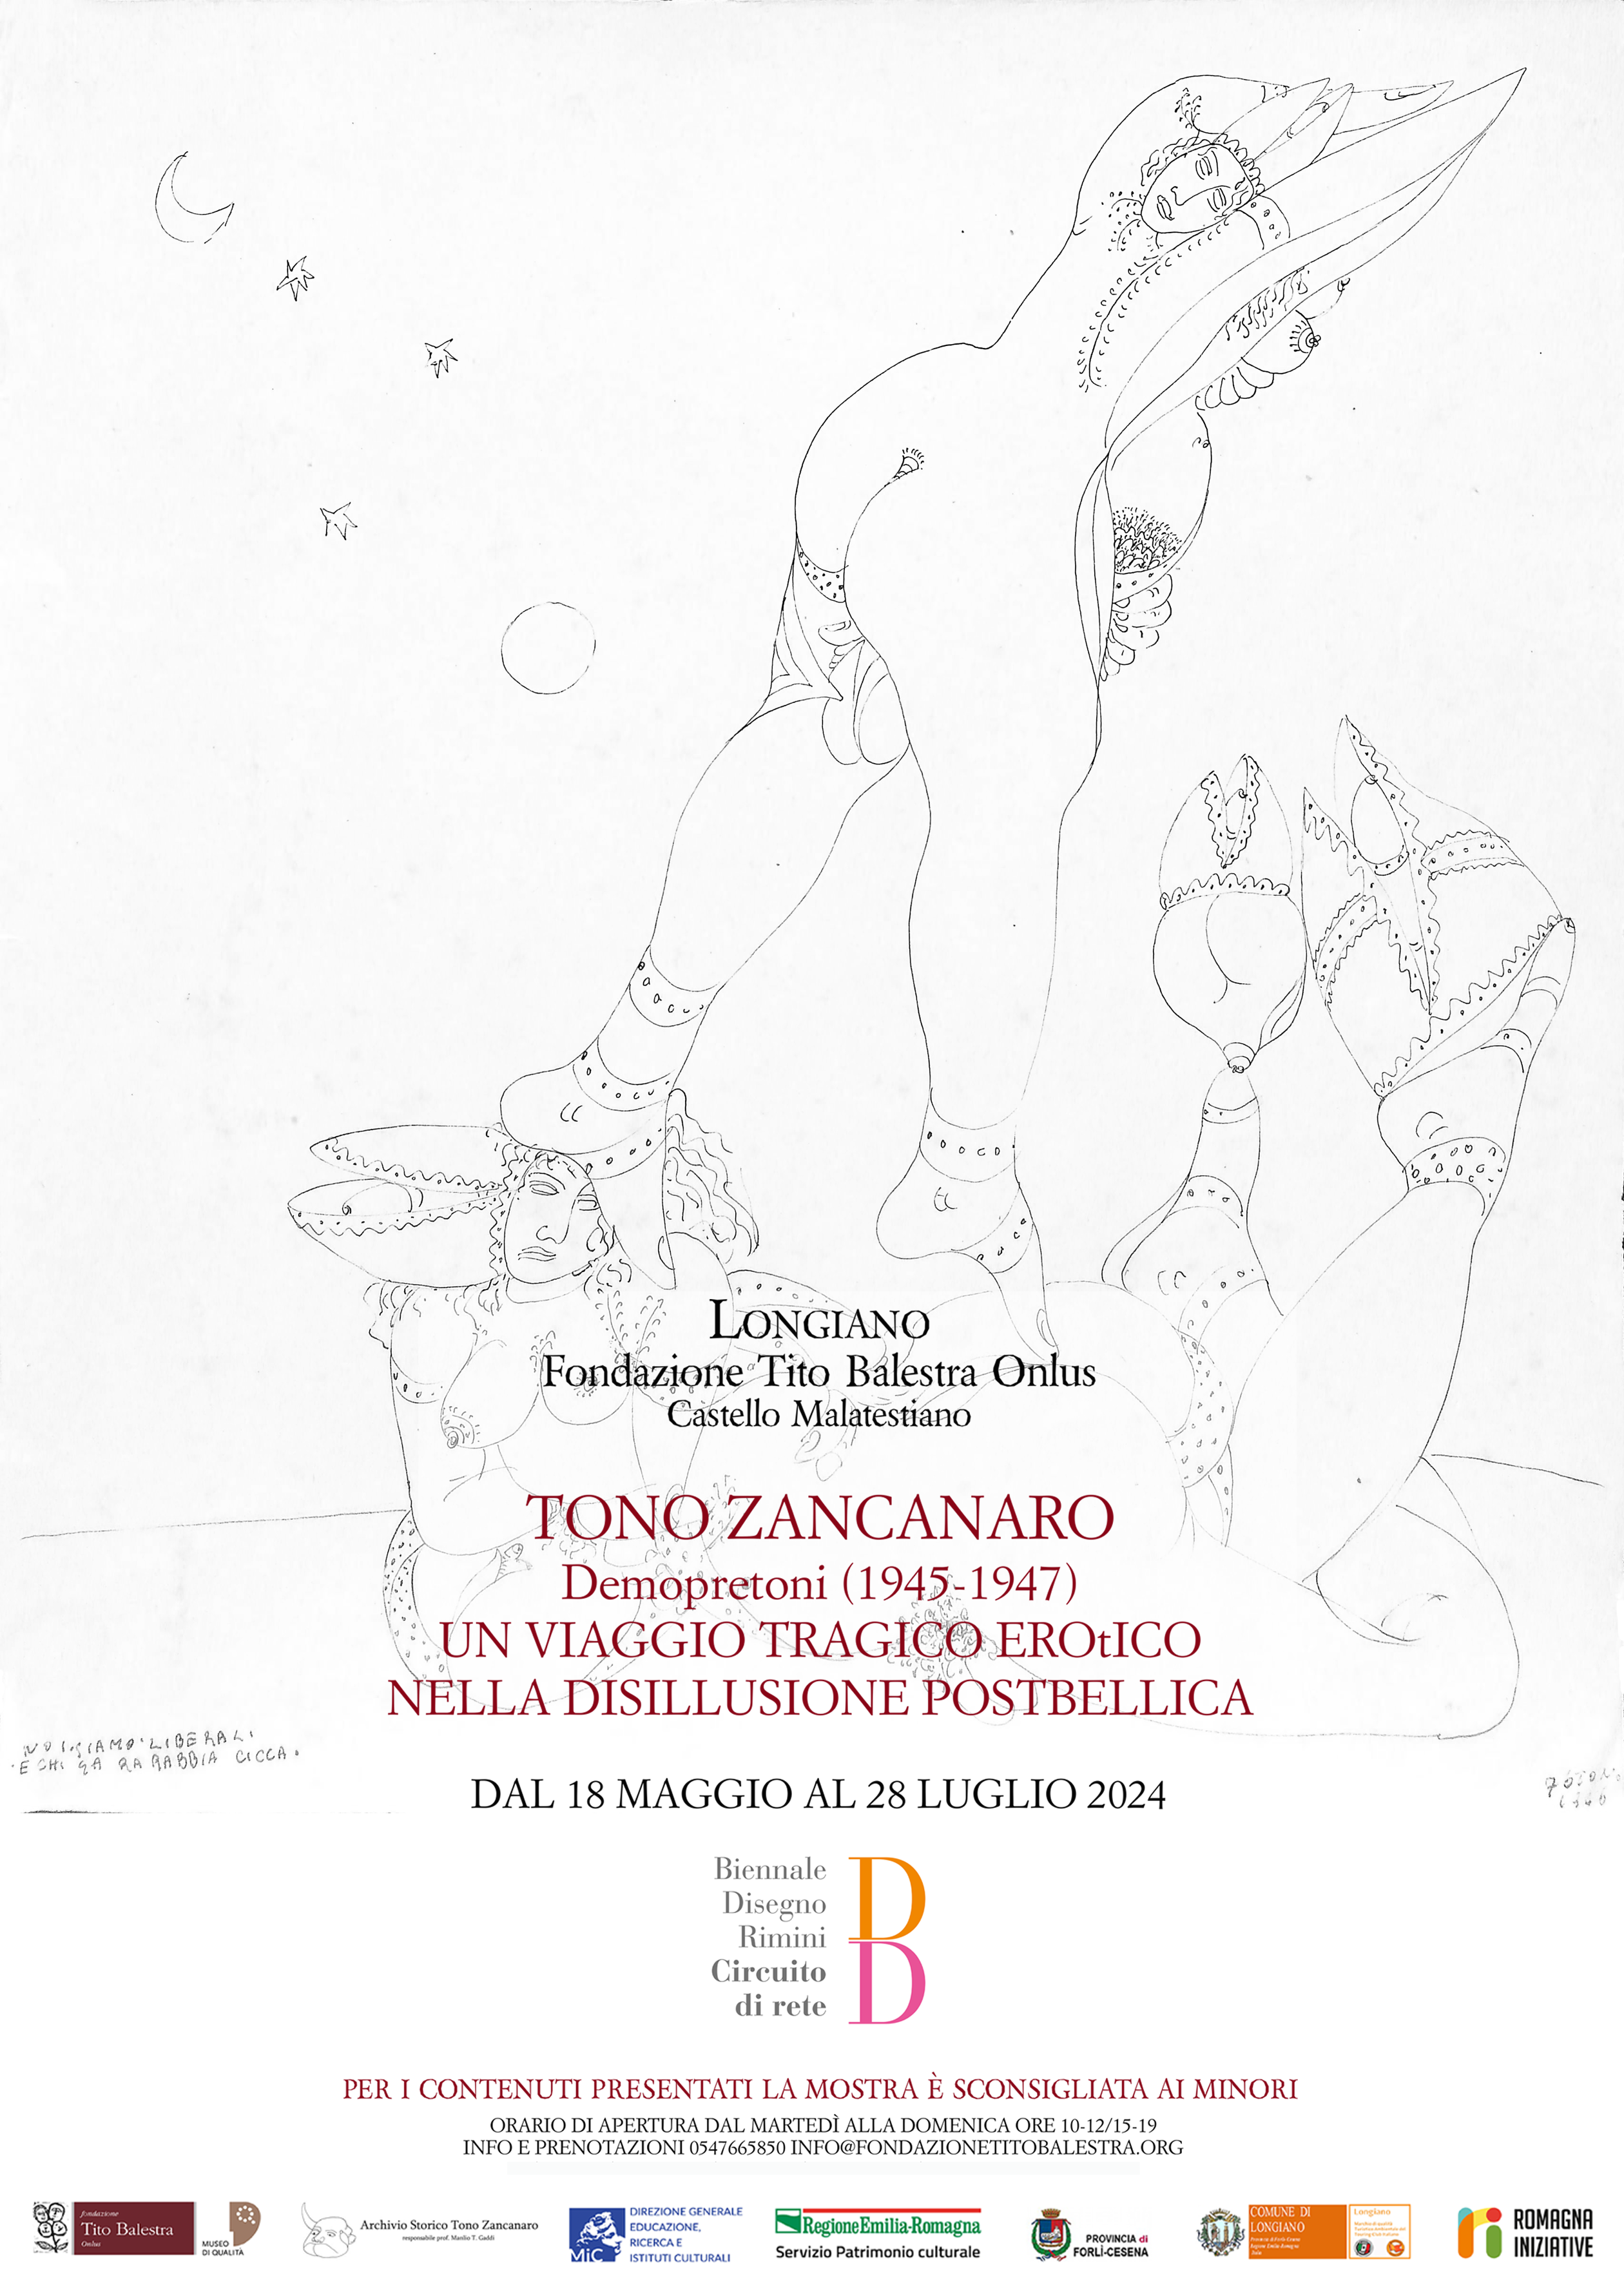 Locandina mostra Zancanaro 2024 immagine dell'evento: Mostra di Tono Zancanaro - DEMOPRETONI / UN VIAGGIO TRAGICO EROtICO NELLA DISILLUSIONE POSTBELLICA